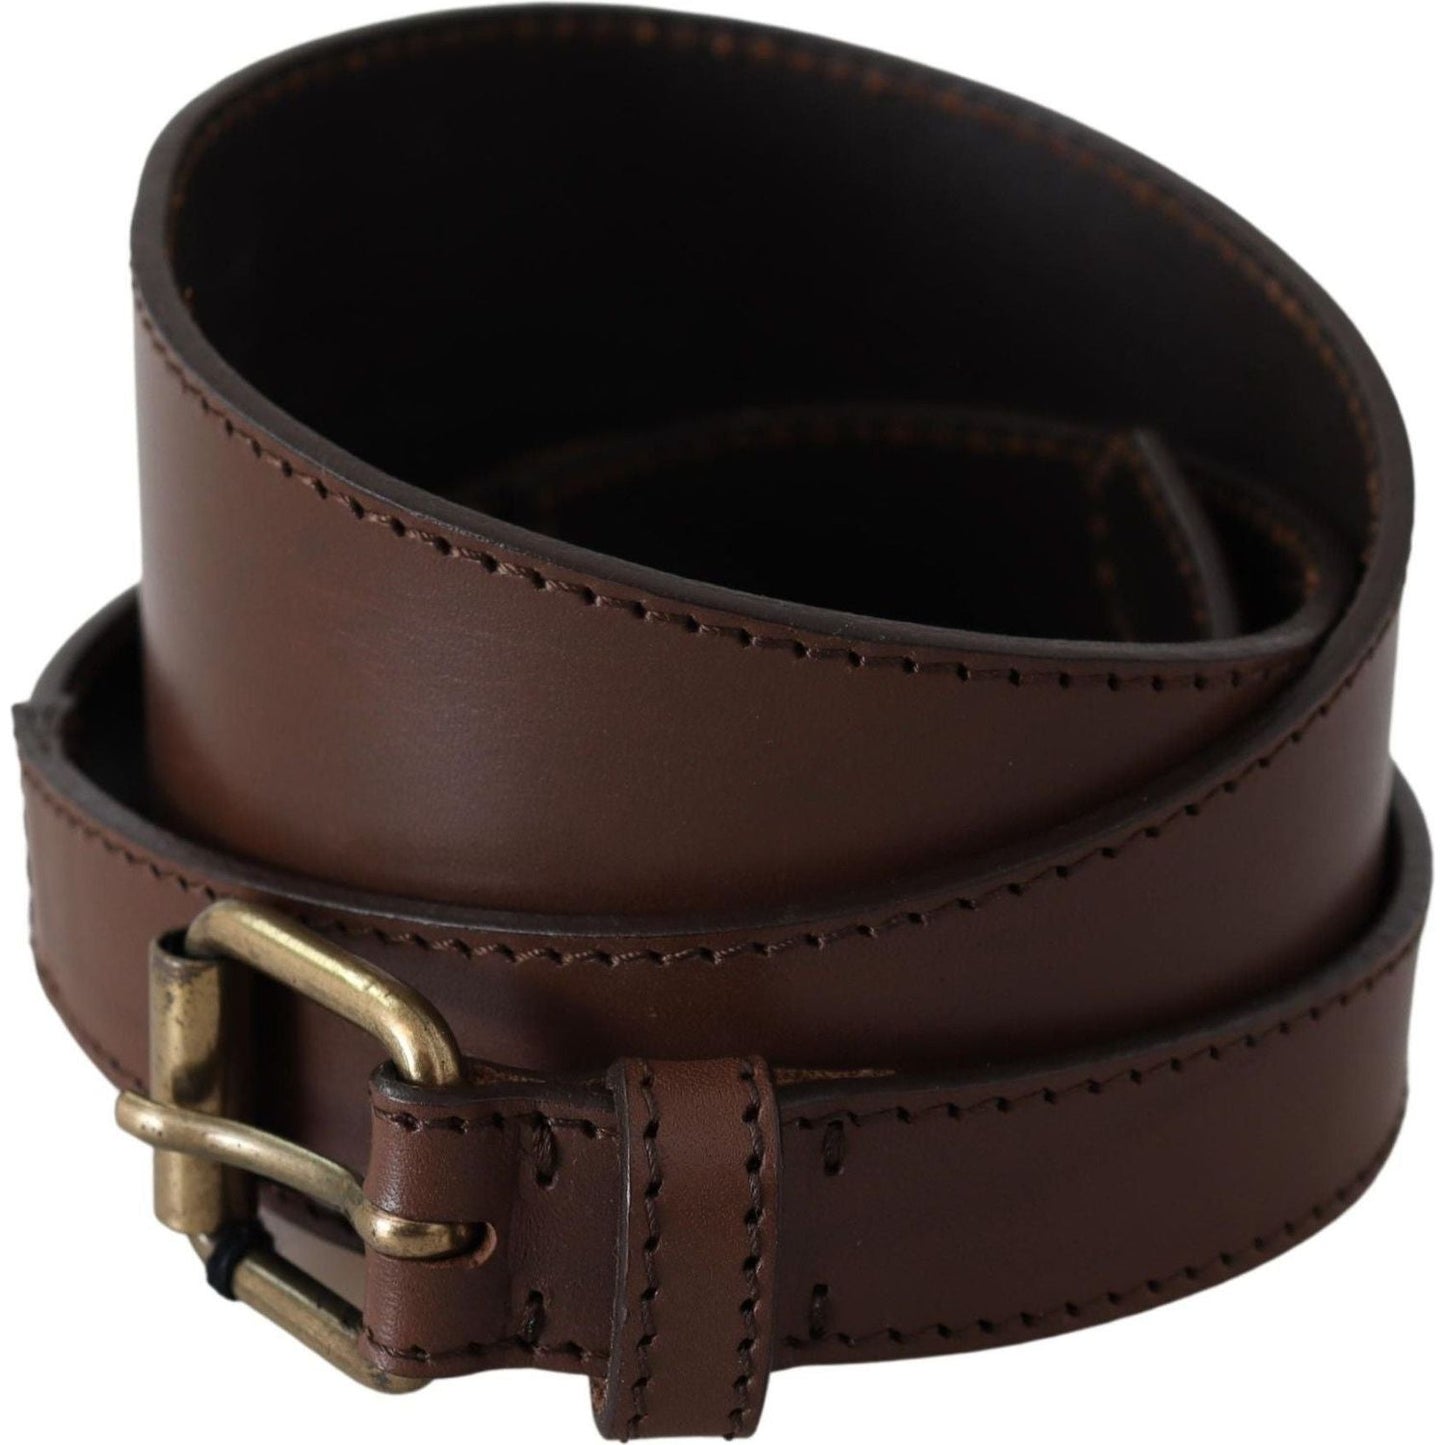 PLEIN SUD Chic Dark Brown Leather Fashion Belt Belt brown-leather-gold-metal-buckle-belt